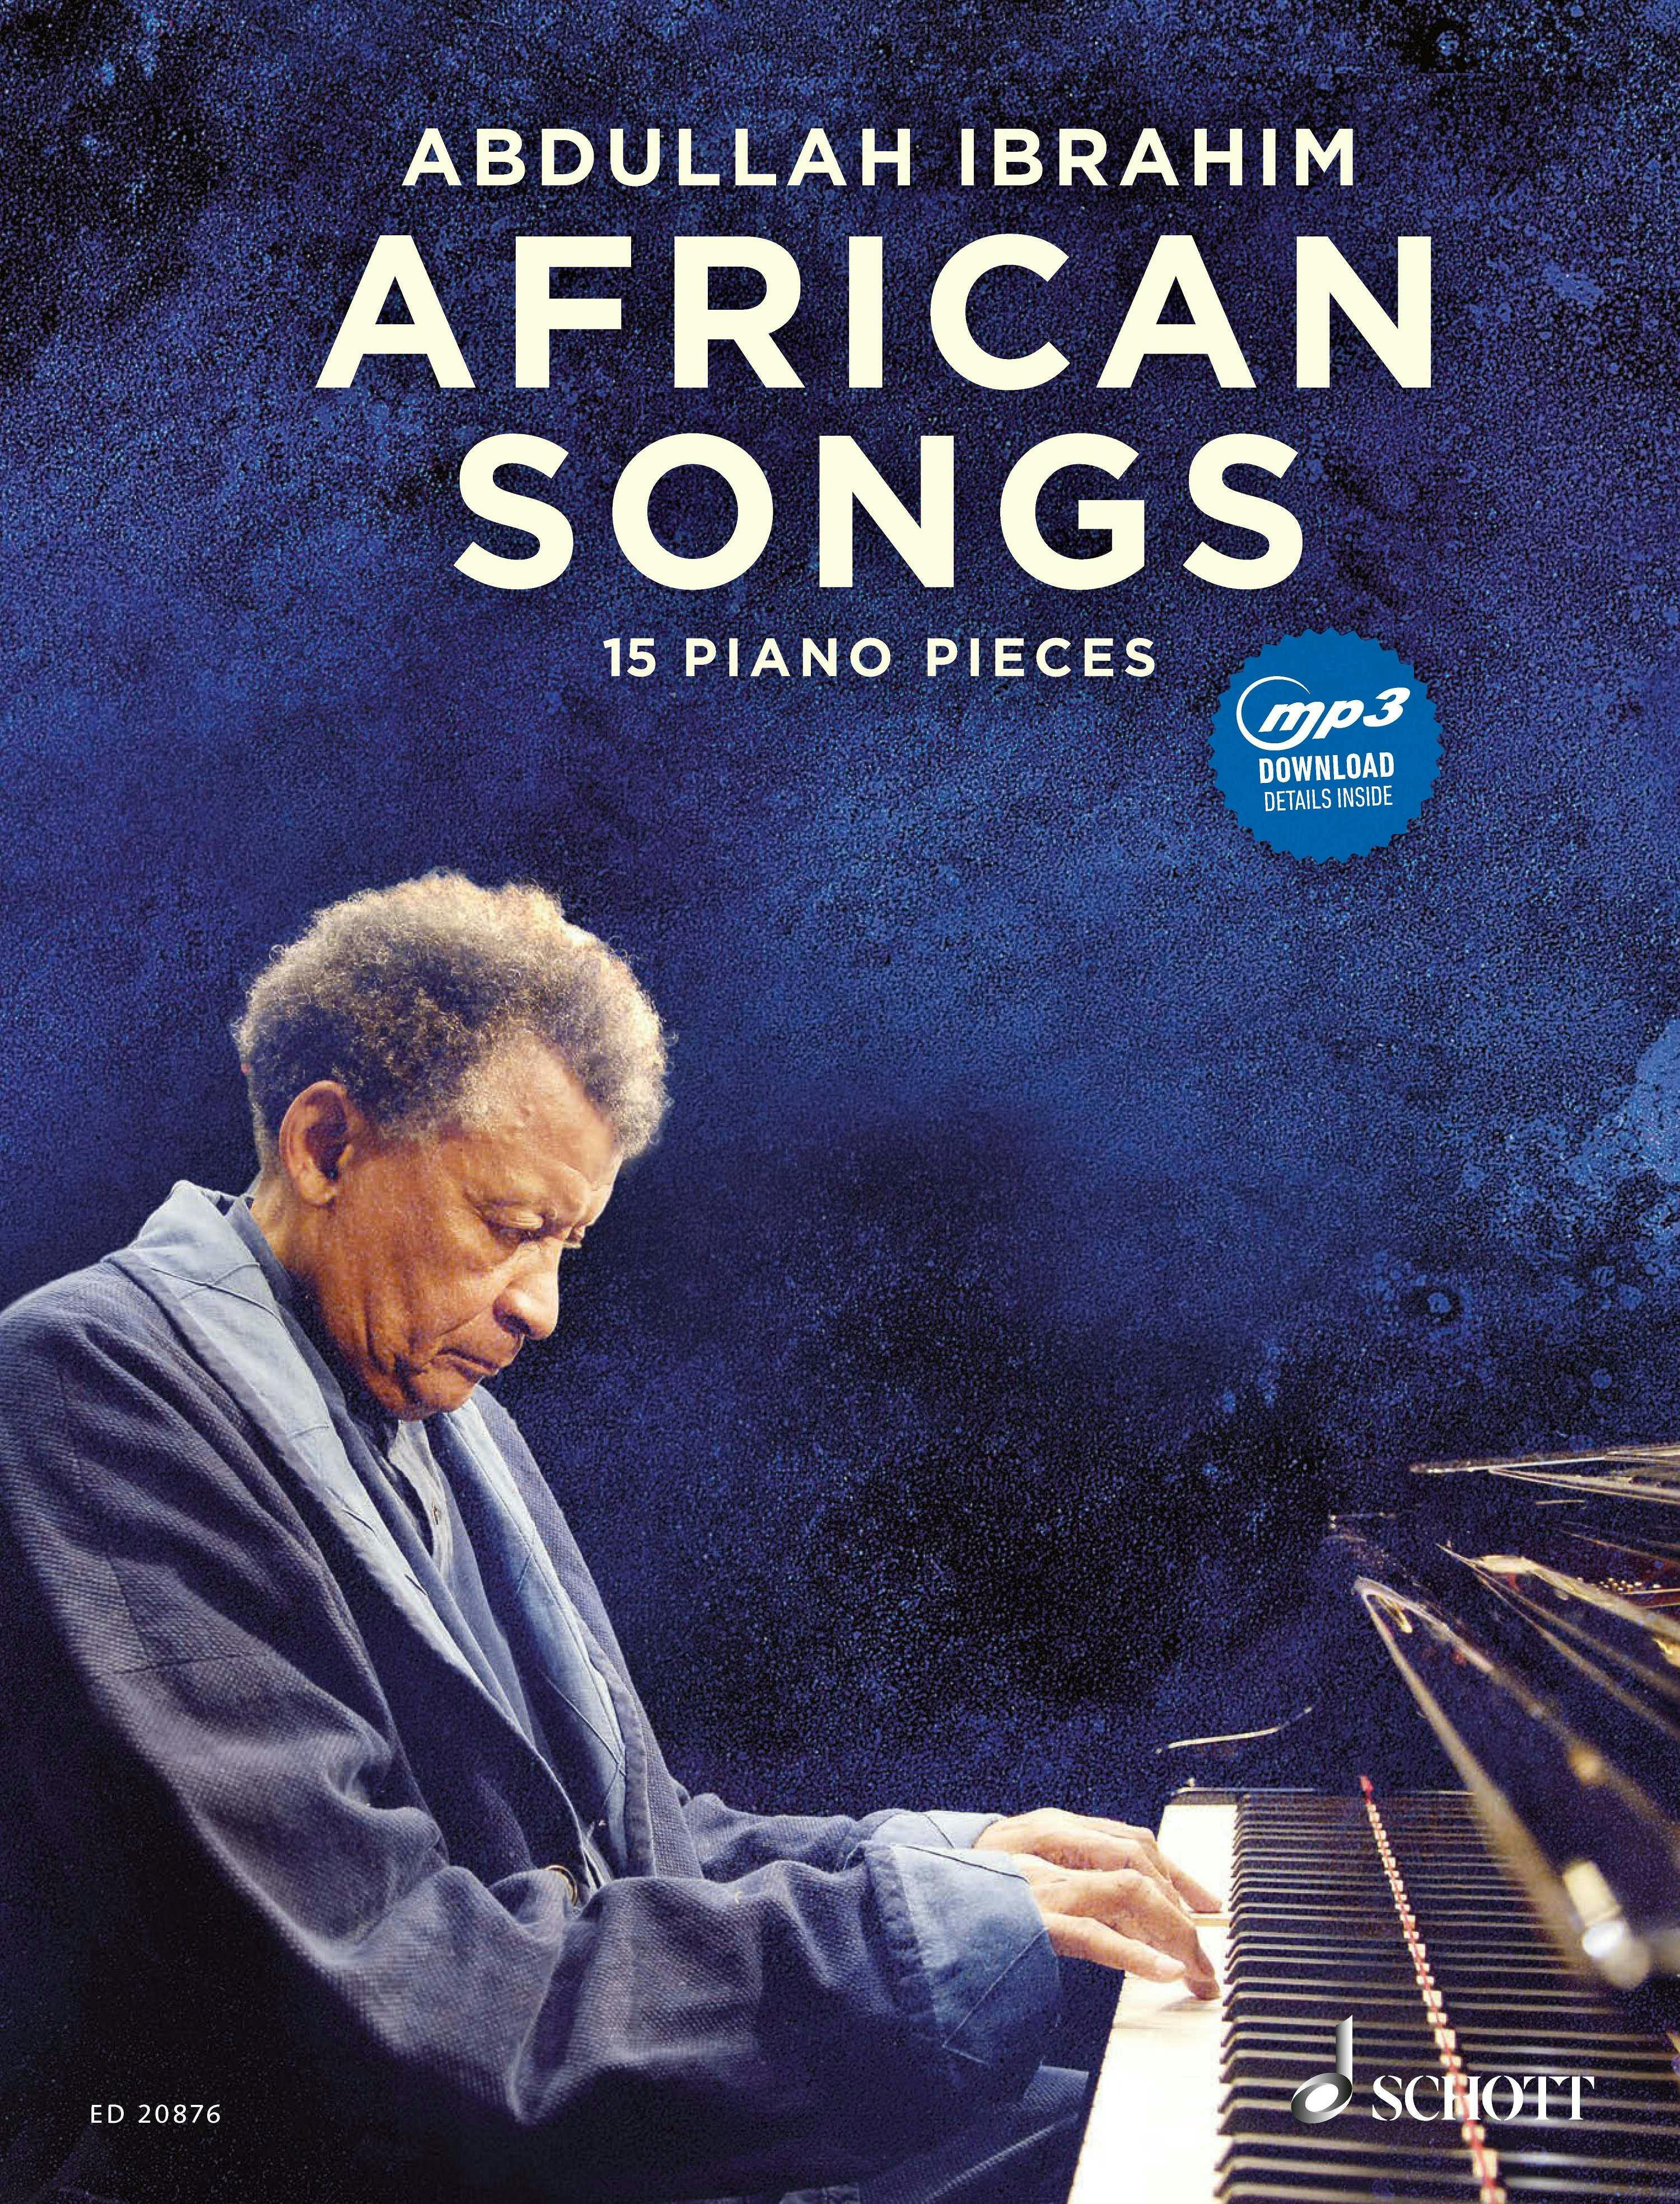 African Songs: 15 piano pieces - Abdullah Ibrahim